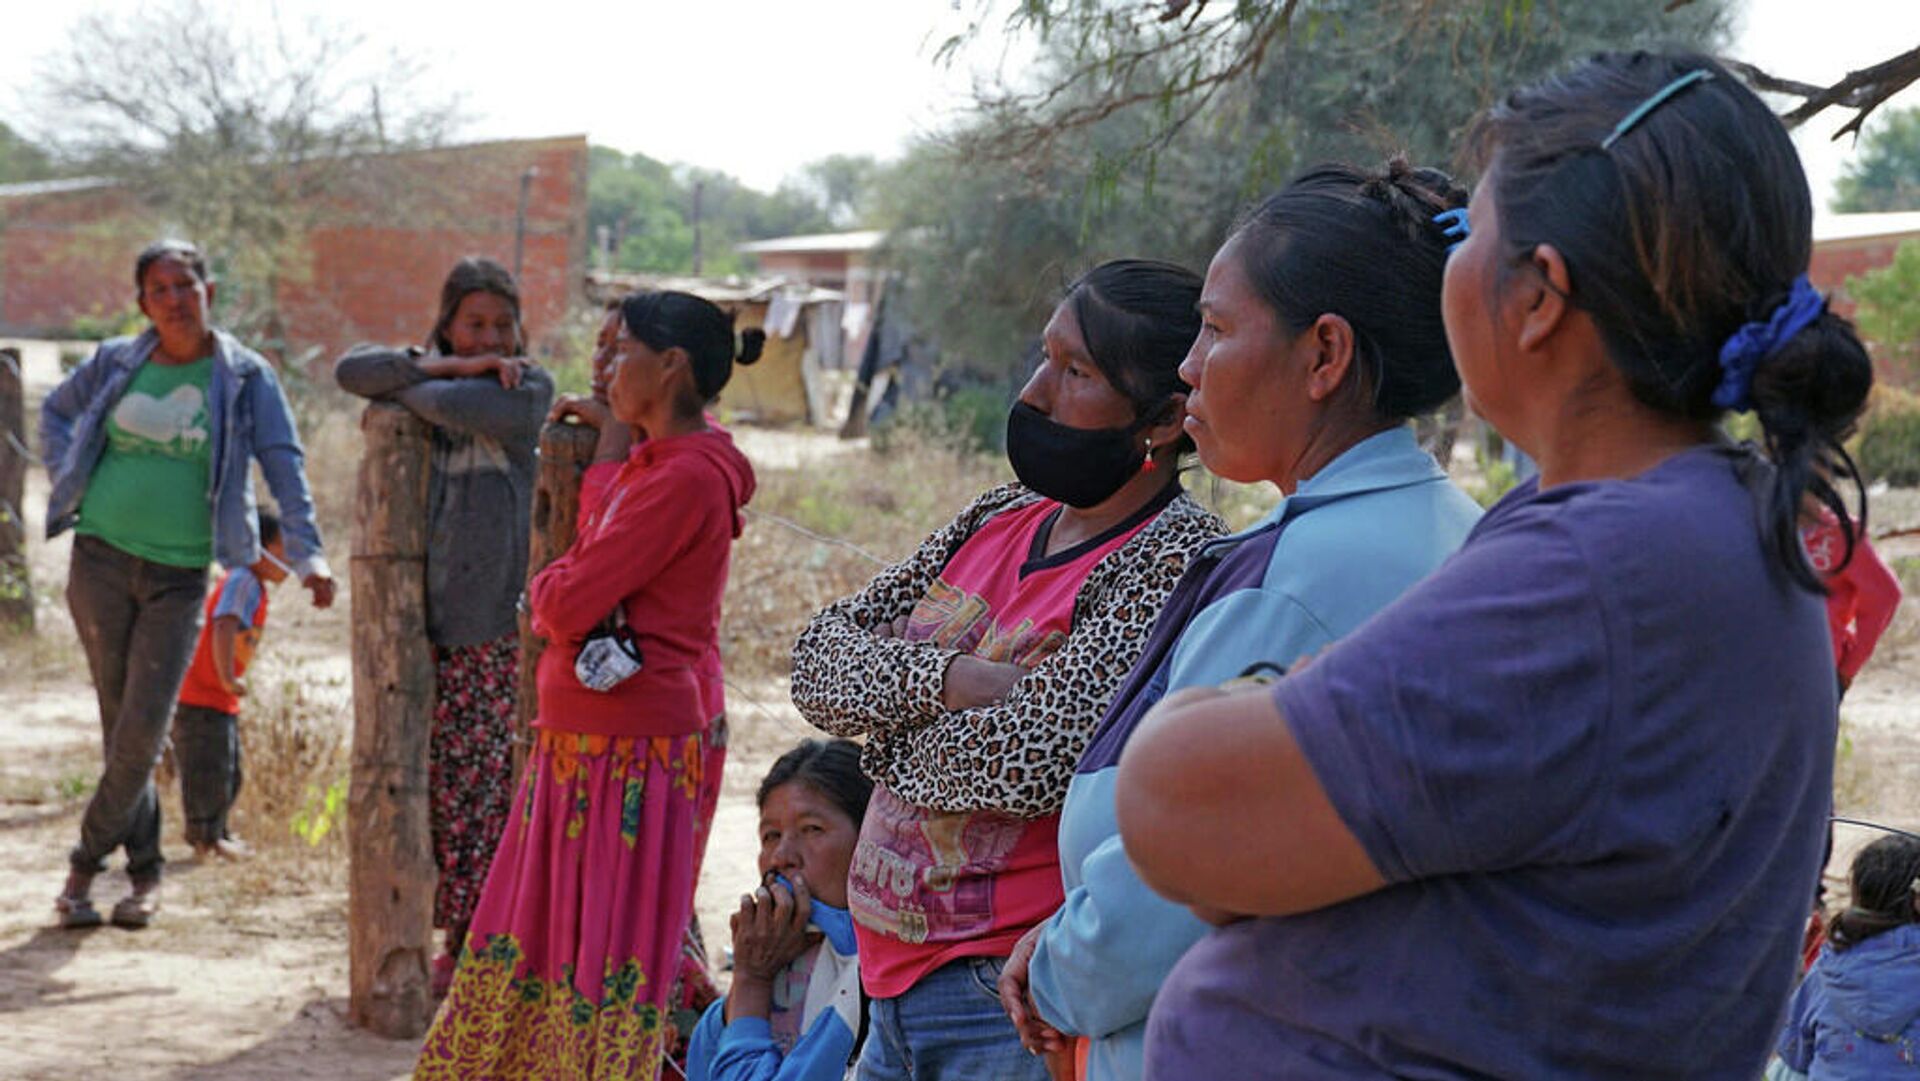 Mujeres de una comunidad indígena en Paraguay esperan para recibir su dosis de la vacuna contra el COVID-19 - Sputnik Mundo, 1920, 15.10.2021